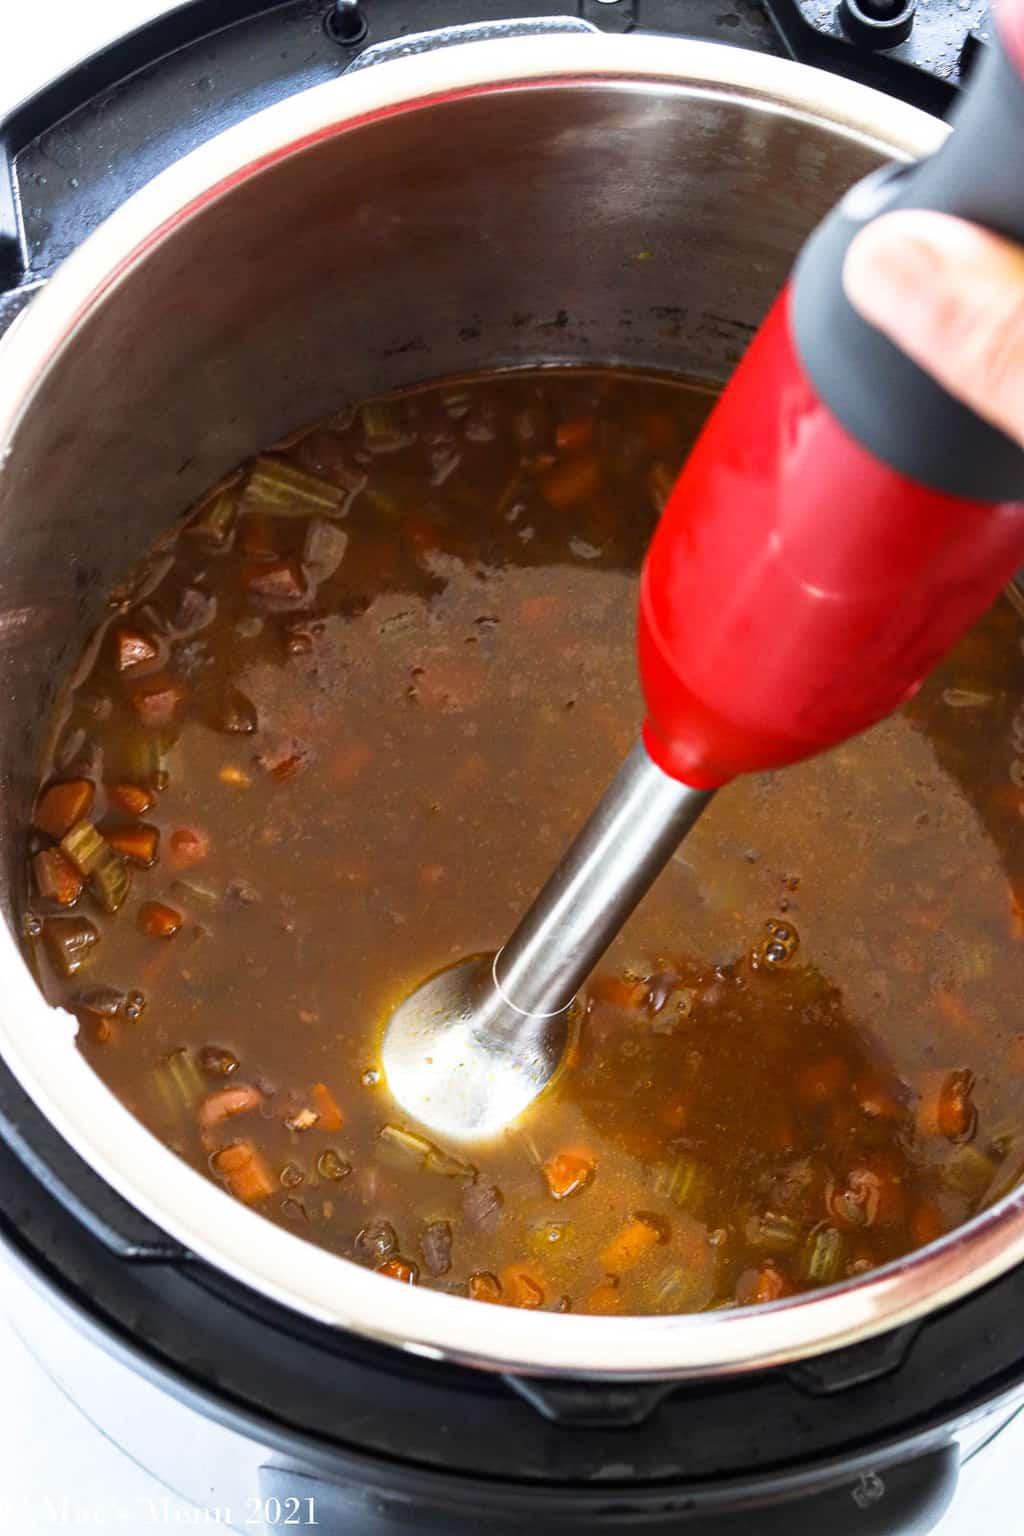 Blending bean soup in an Instant Pot